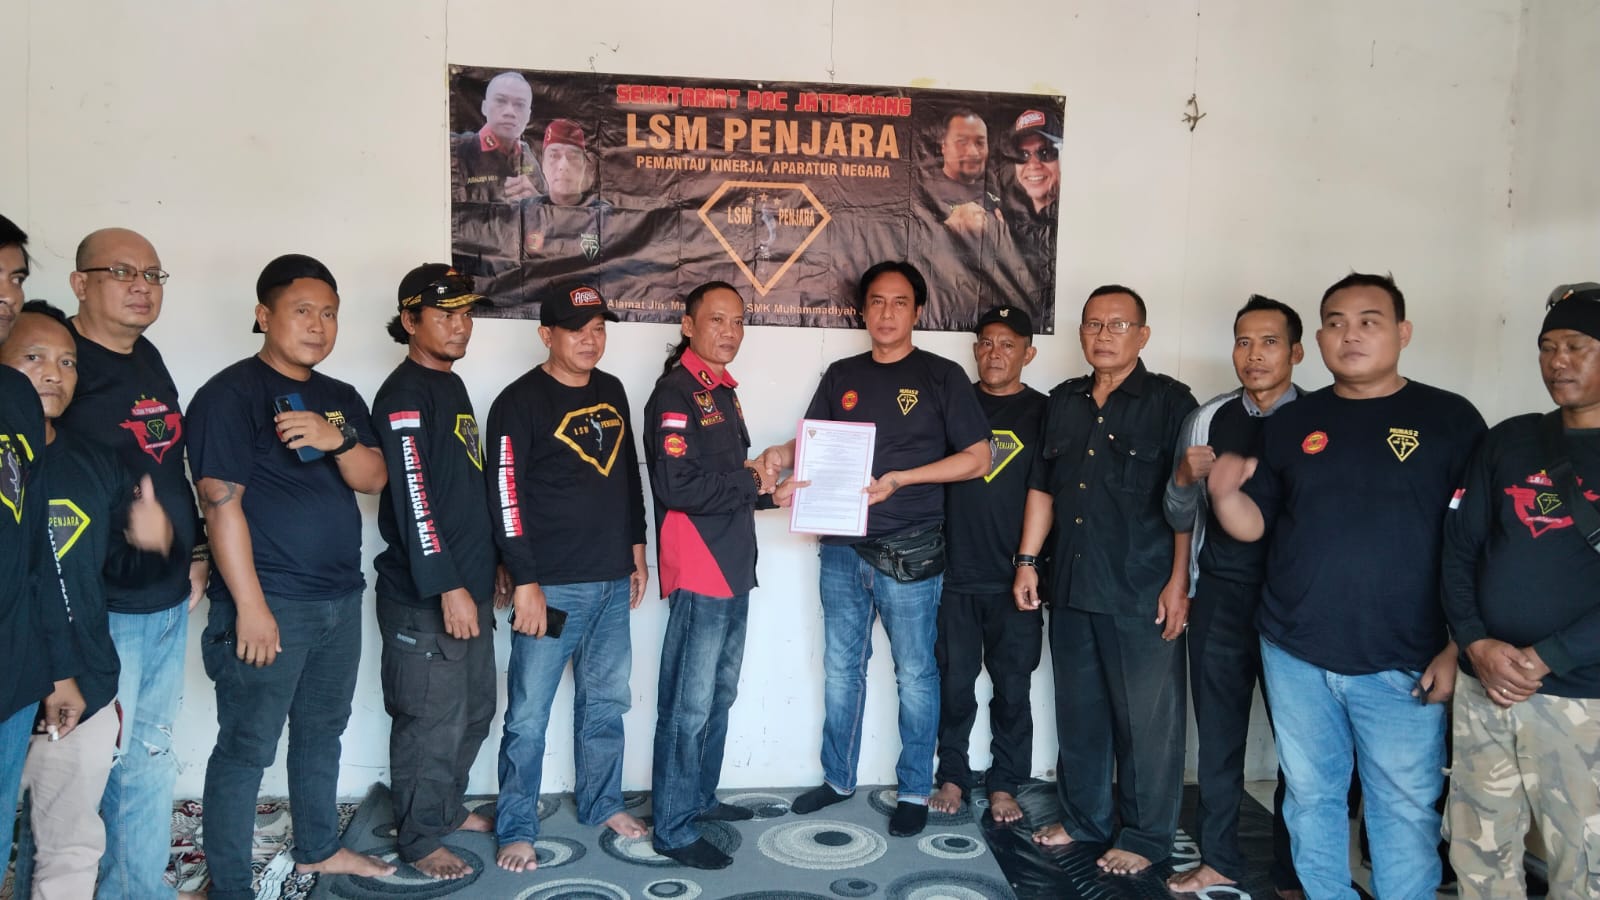 Ketua Dpc Lsm penjara Winata Serahkan SK Pengangkatan kepada Ketua PAC Kecamatan Jatibarang dan PAC Kandanghaur.